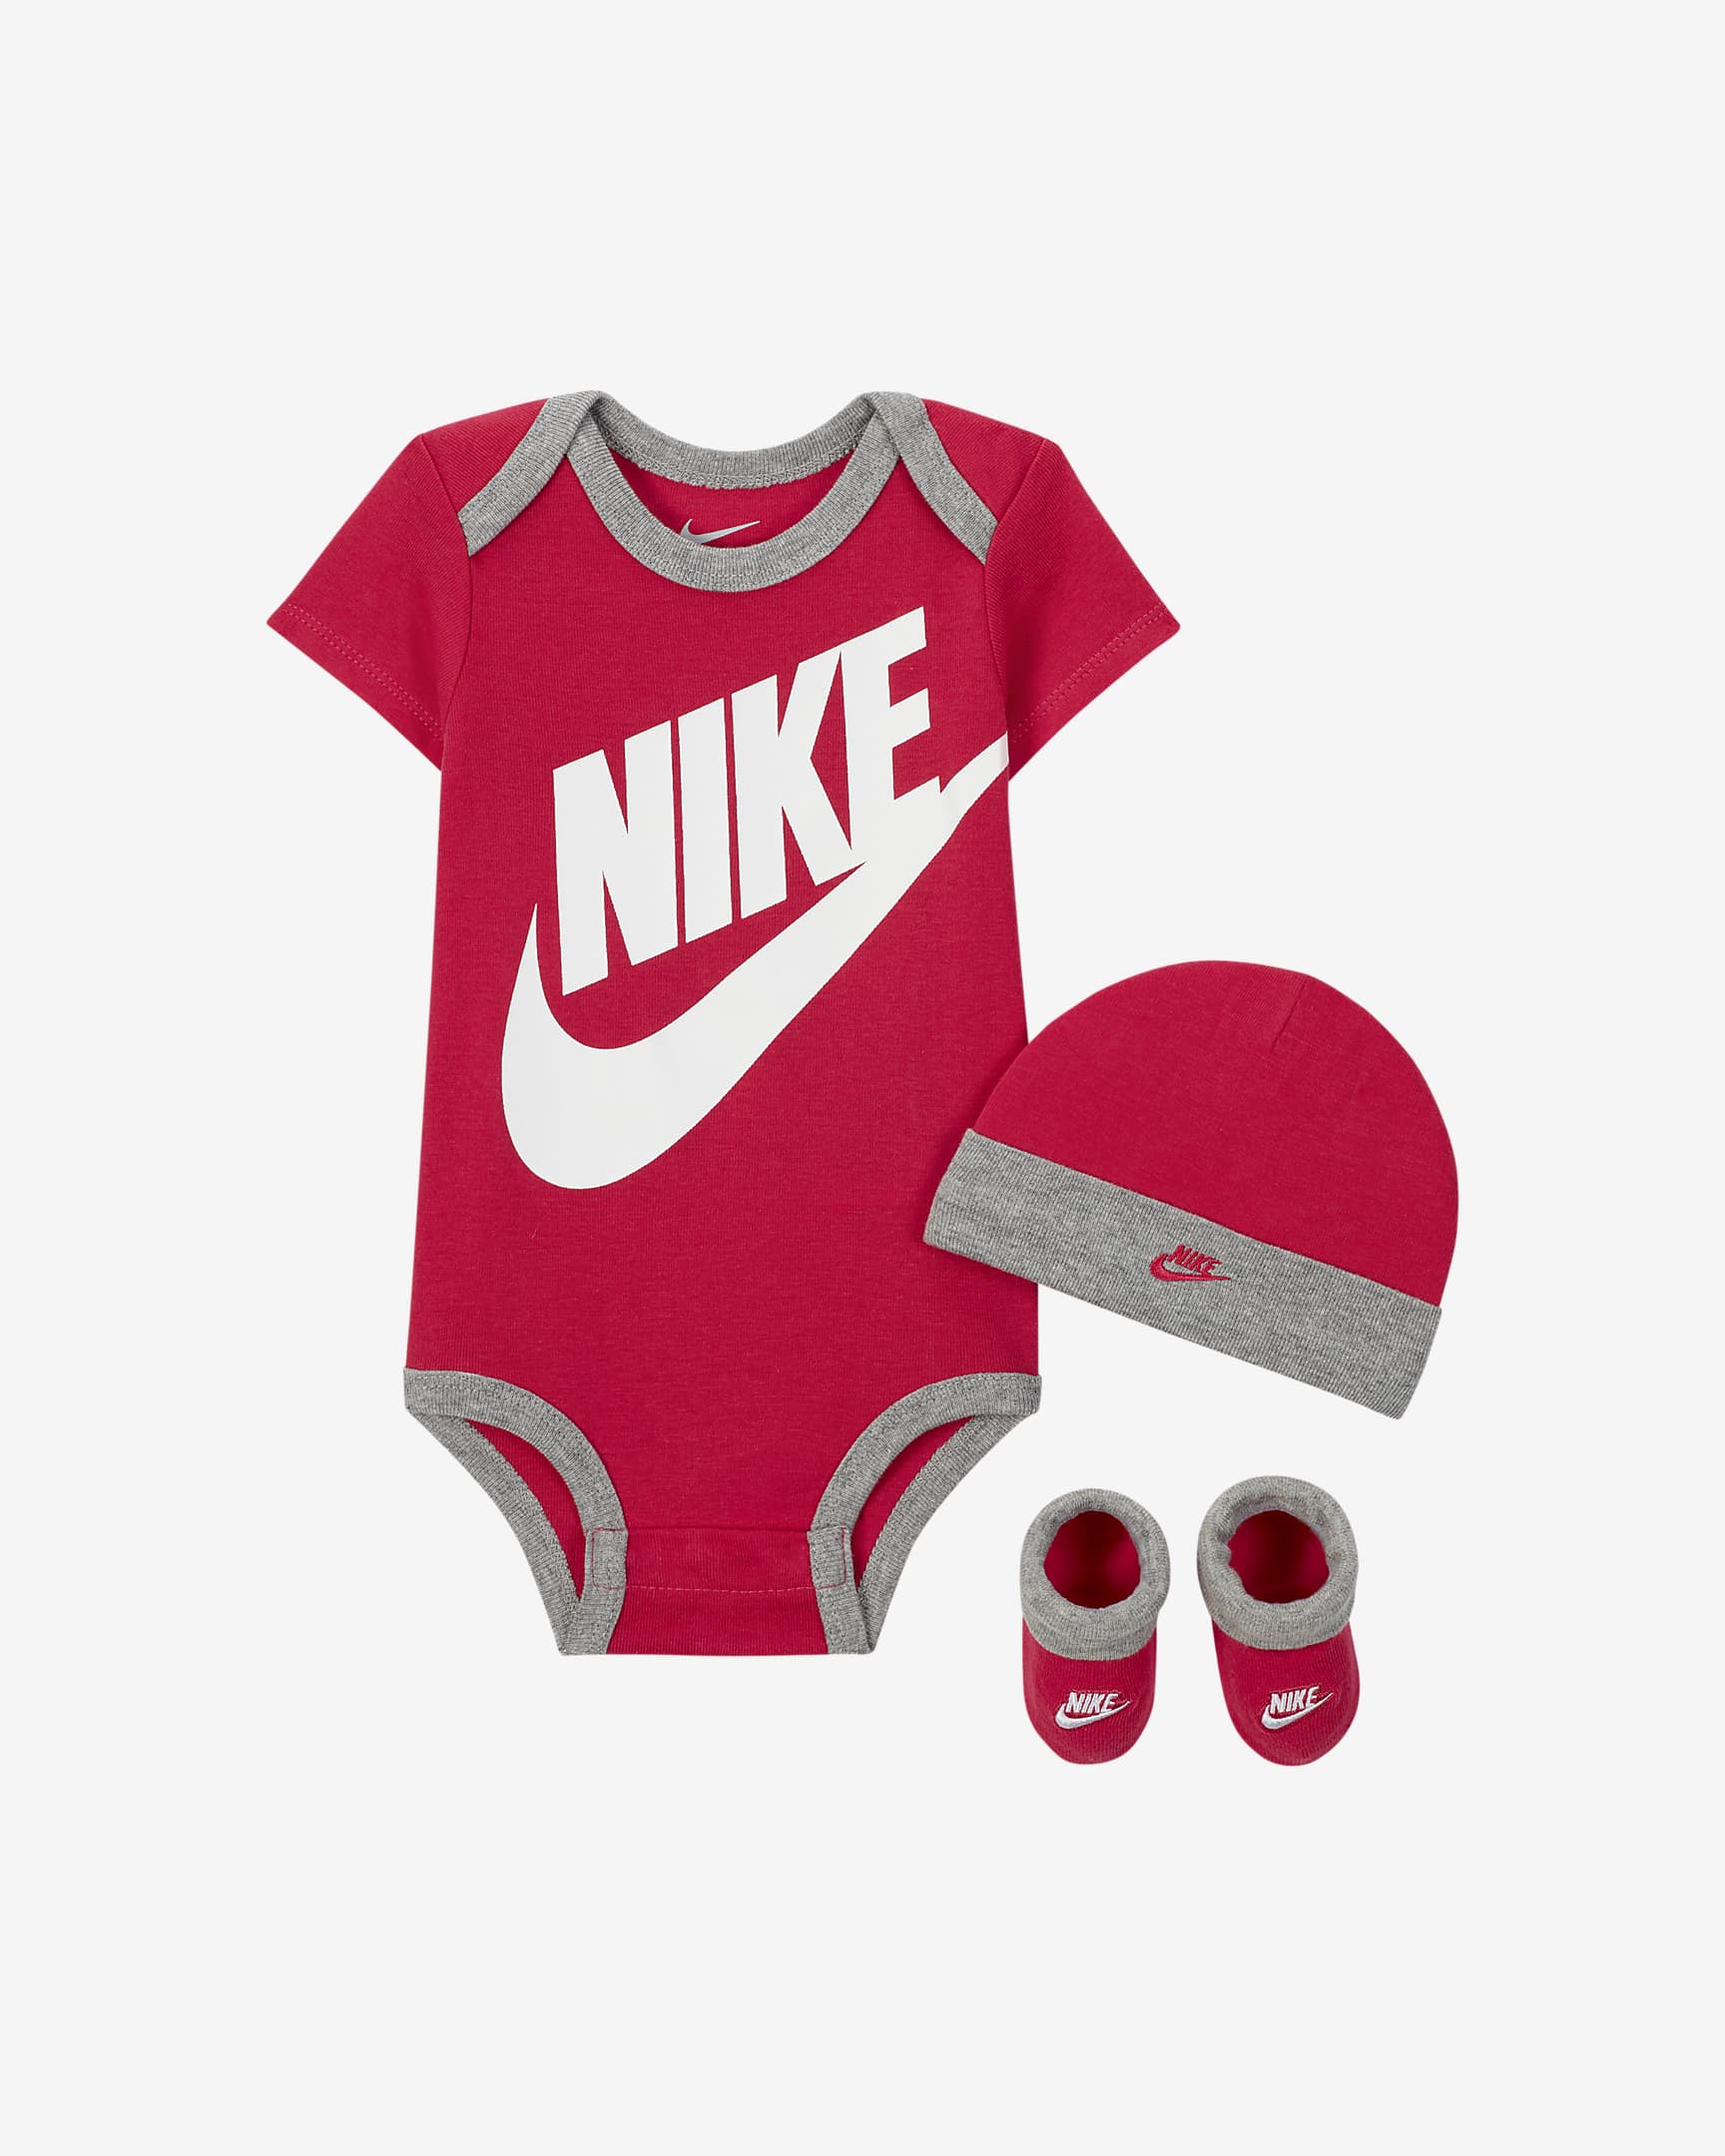 Nike Baby Set - Pink/Grey/White